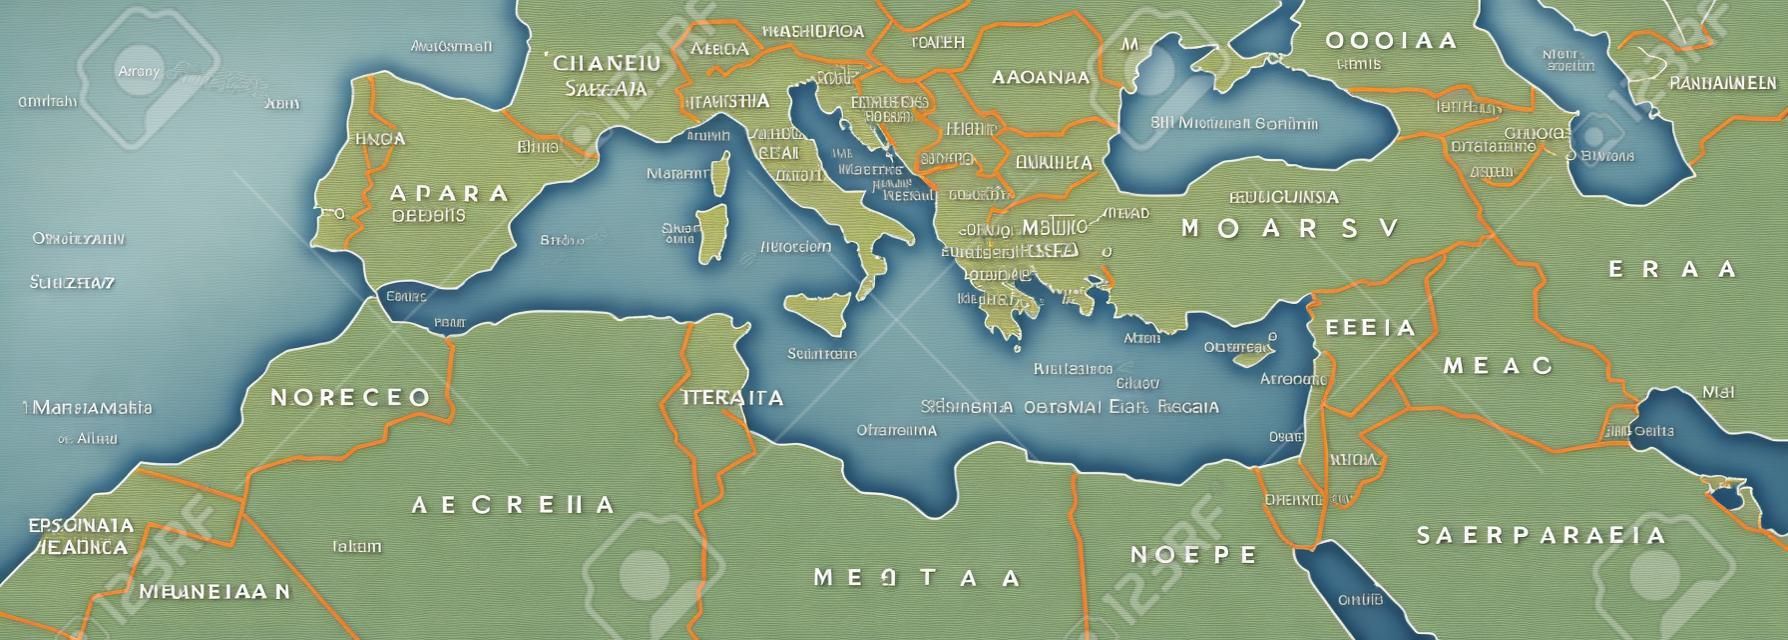 地中海盆地政治地圖。地中海地區，也是地中海地中海地區。地中海附近的土地。南歐，北非和近東。灰色插圖與英文標籤。向量。